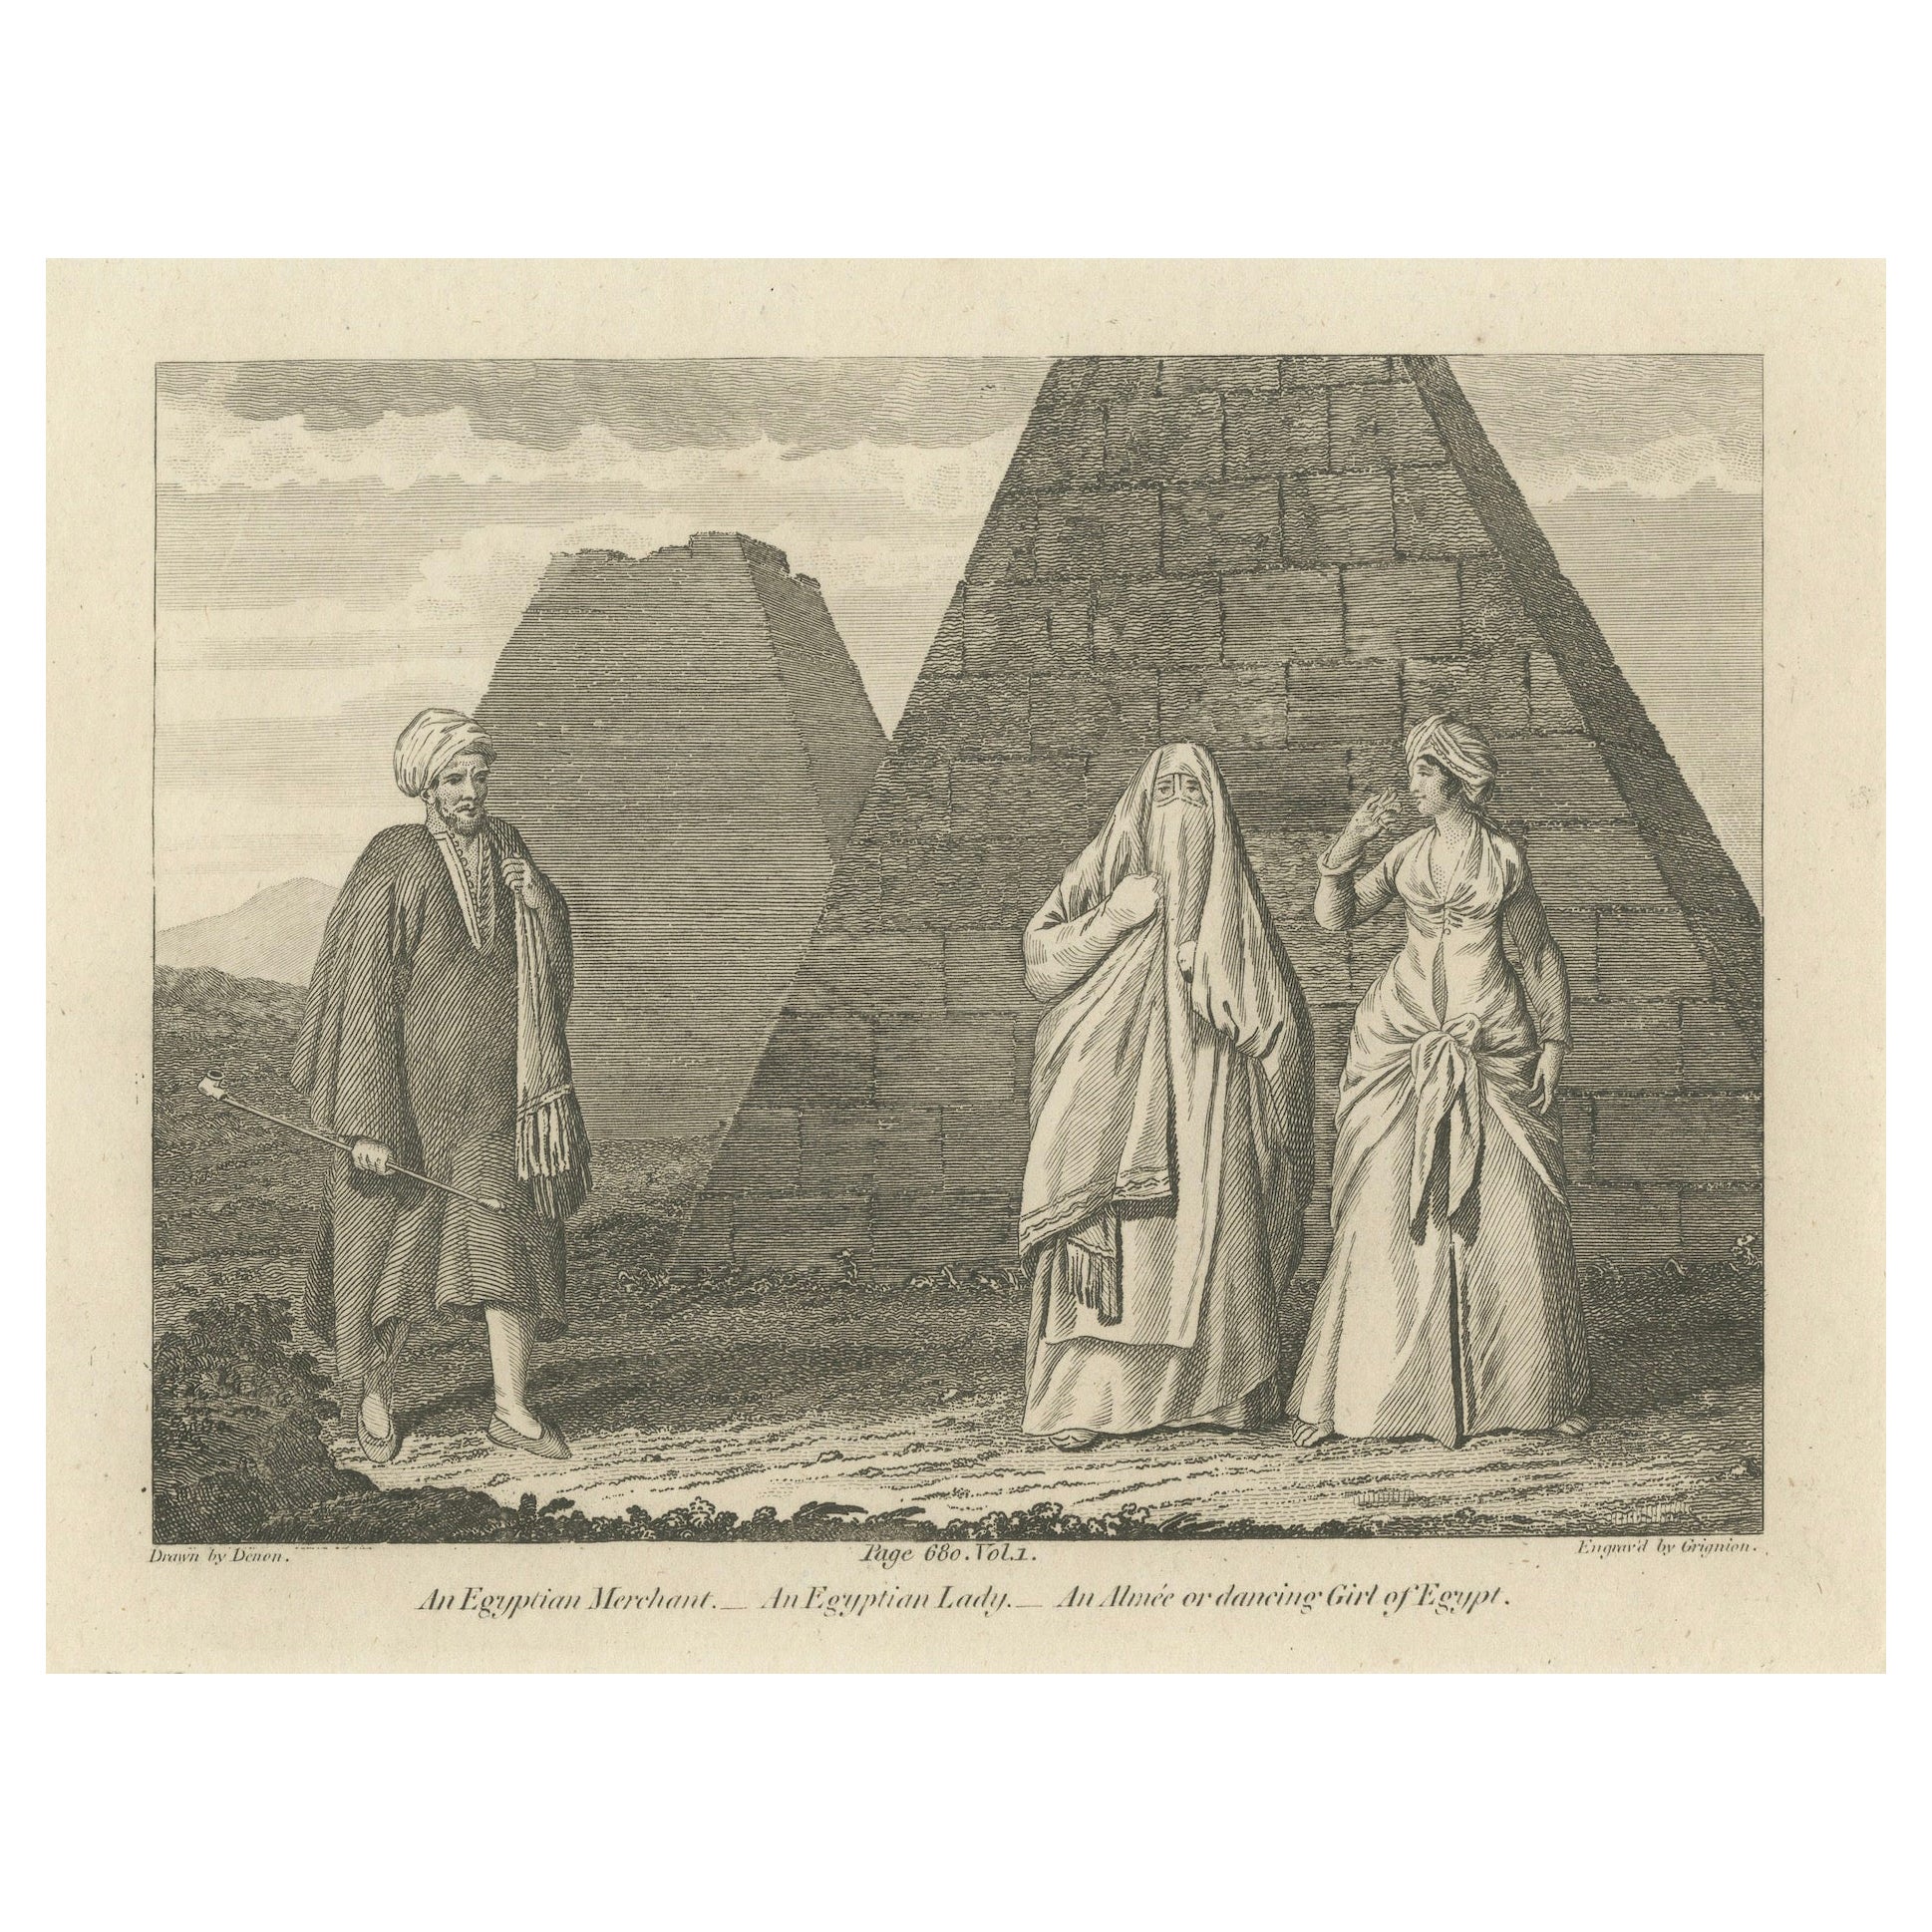 Society of the Nile : Mamluk, Lady, and Almee en Égypte, 1801